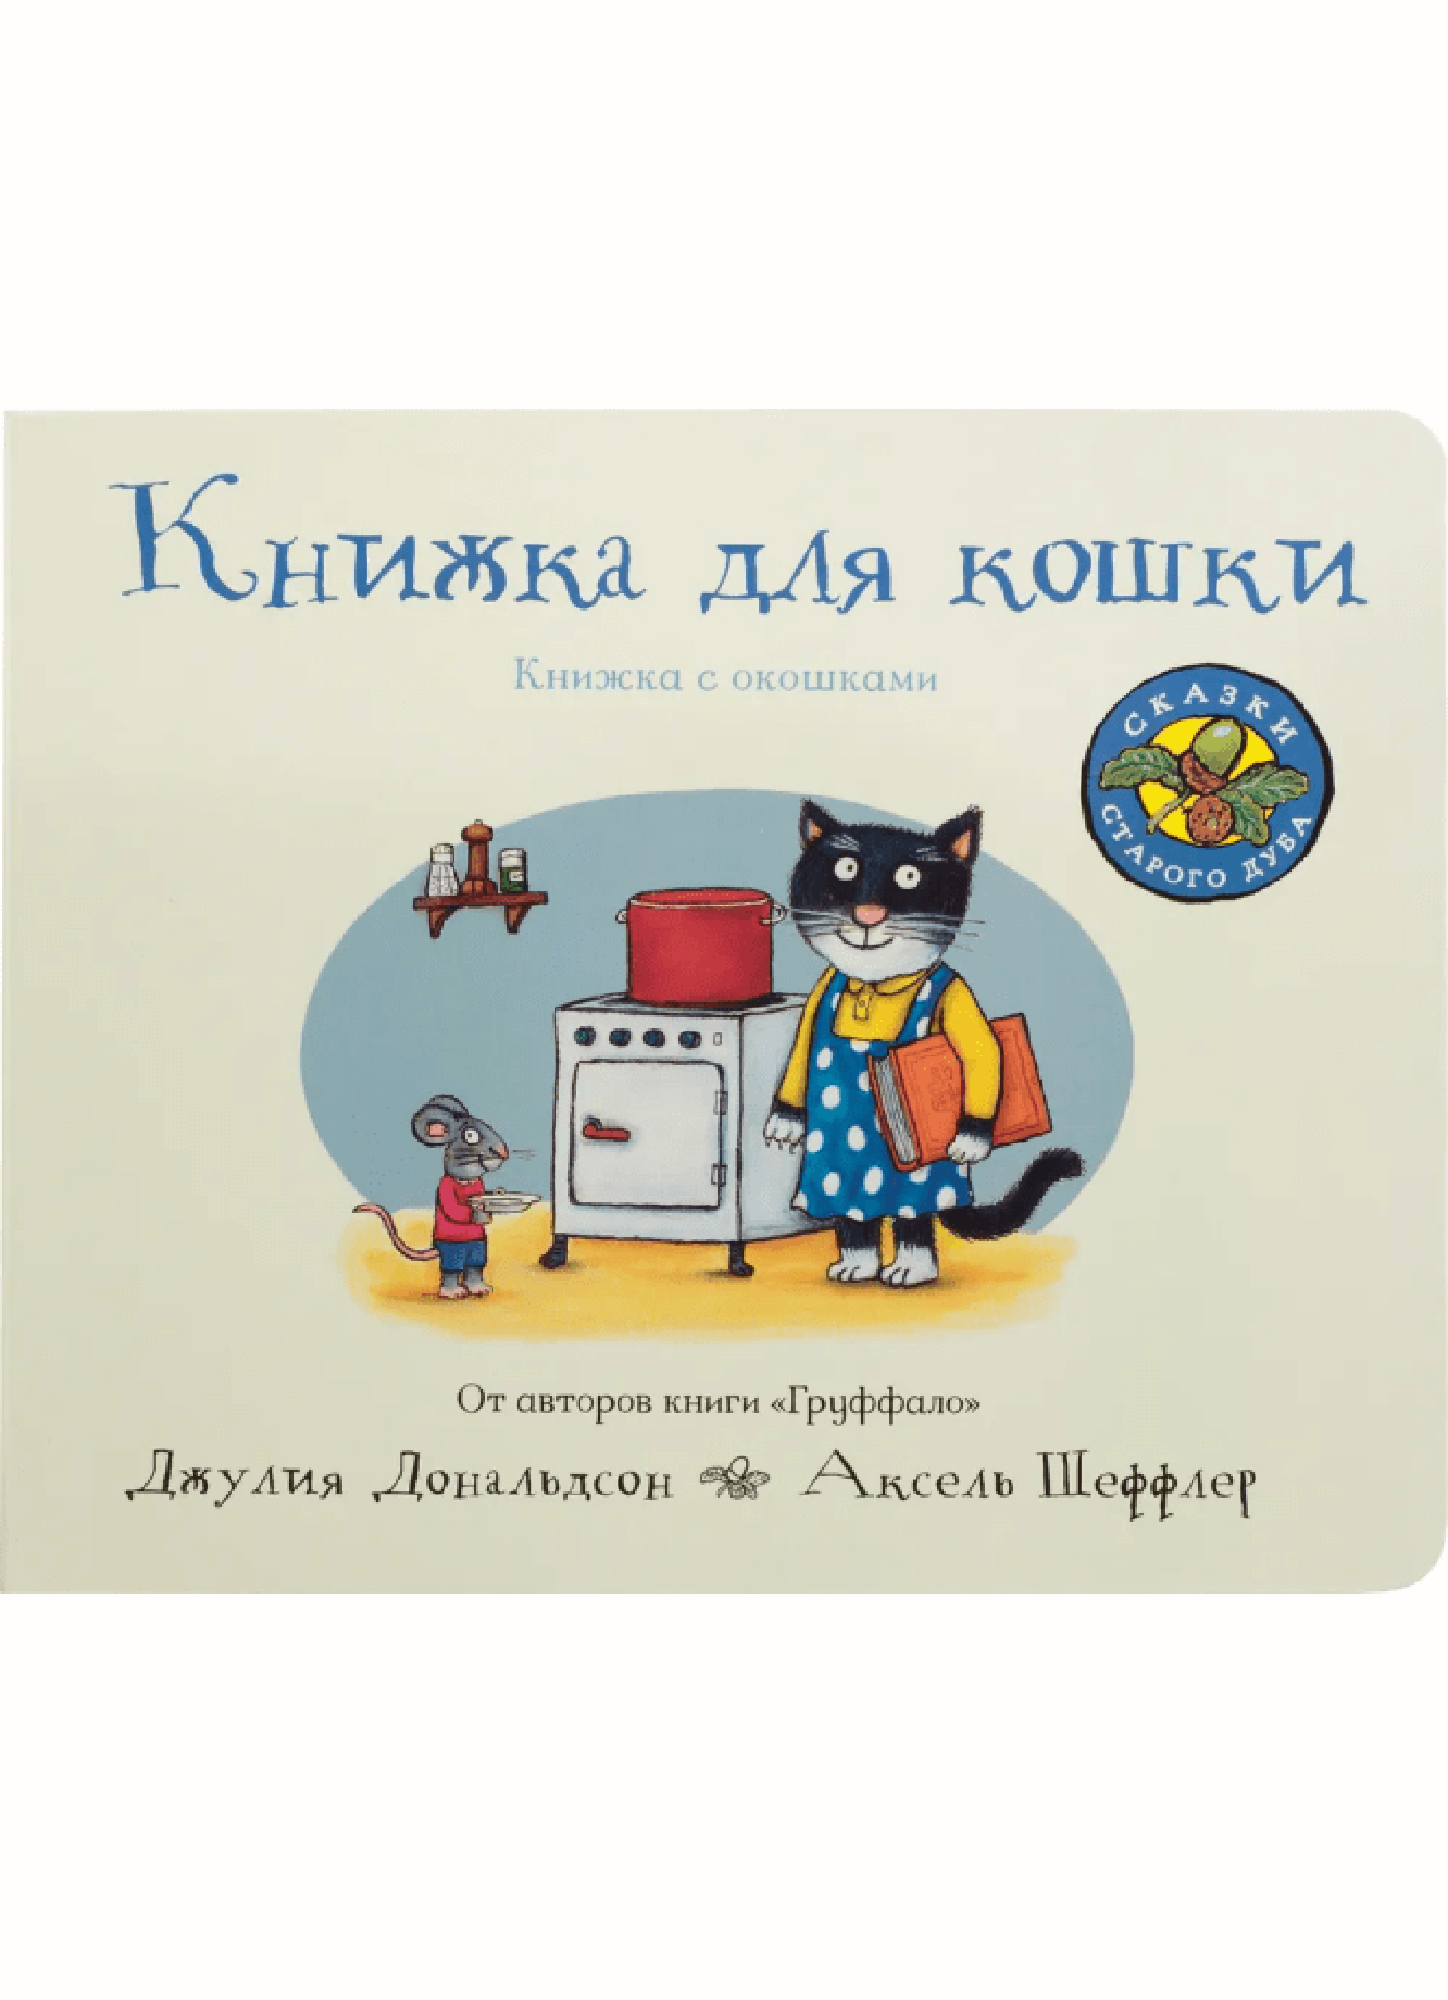 Дональдсон Дж. Книжка для кошки | (МашиныТворения, картон)